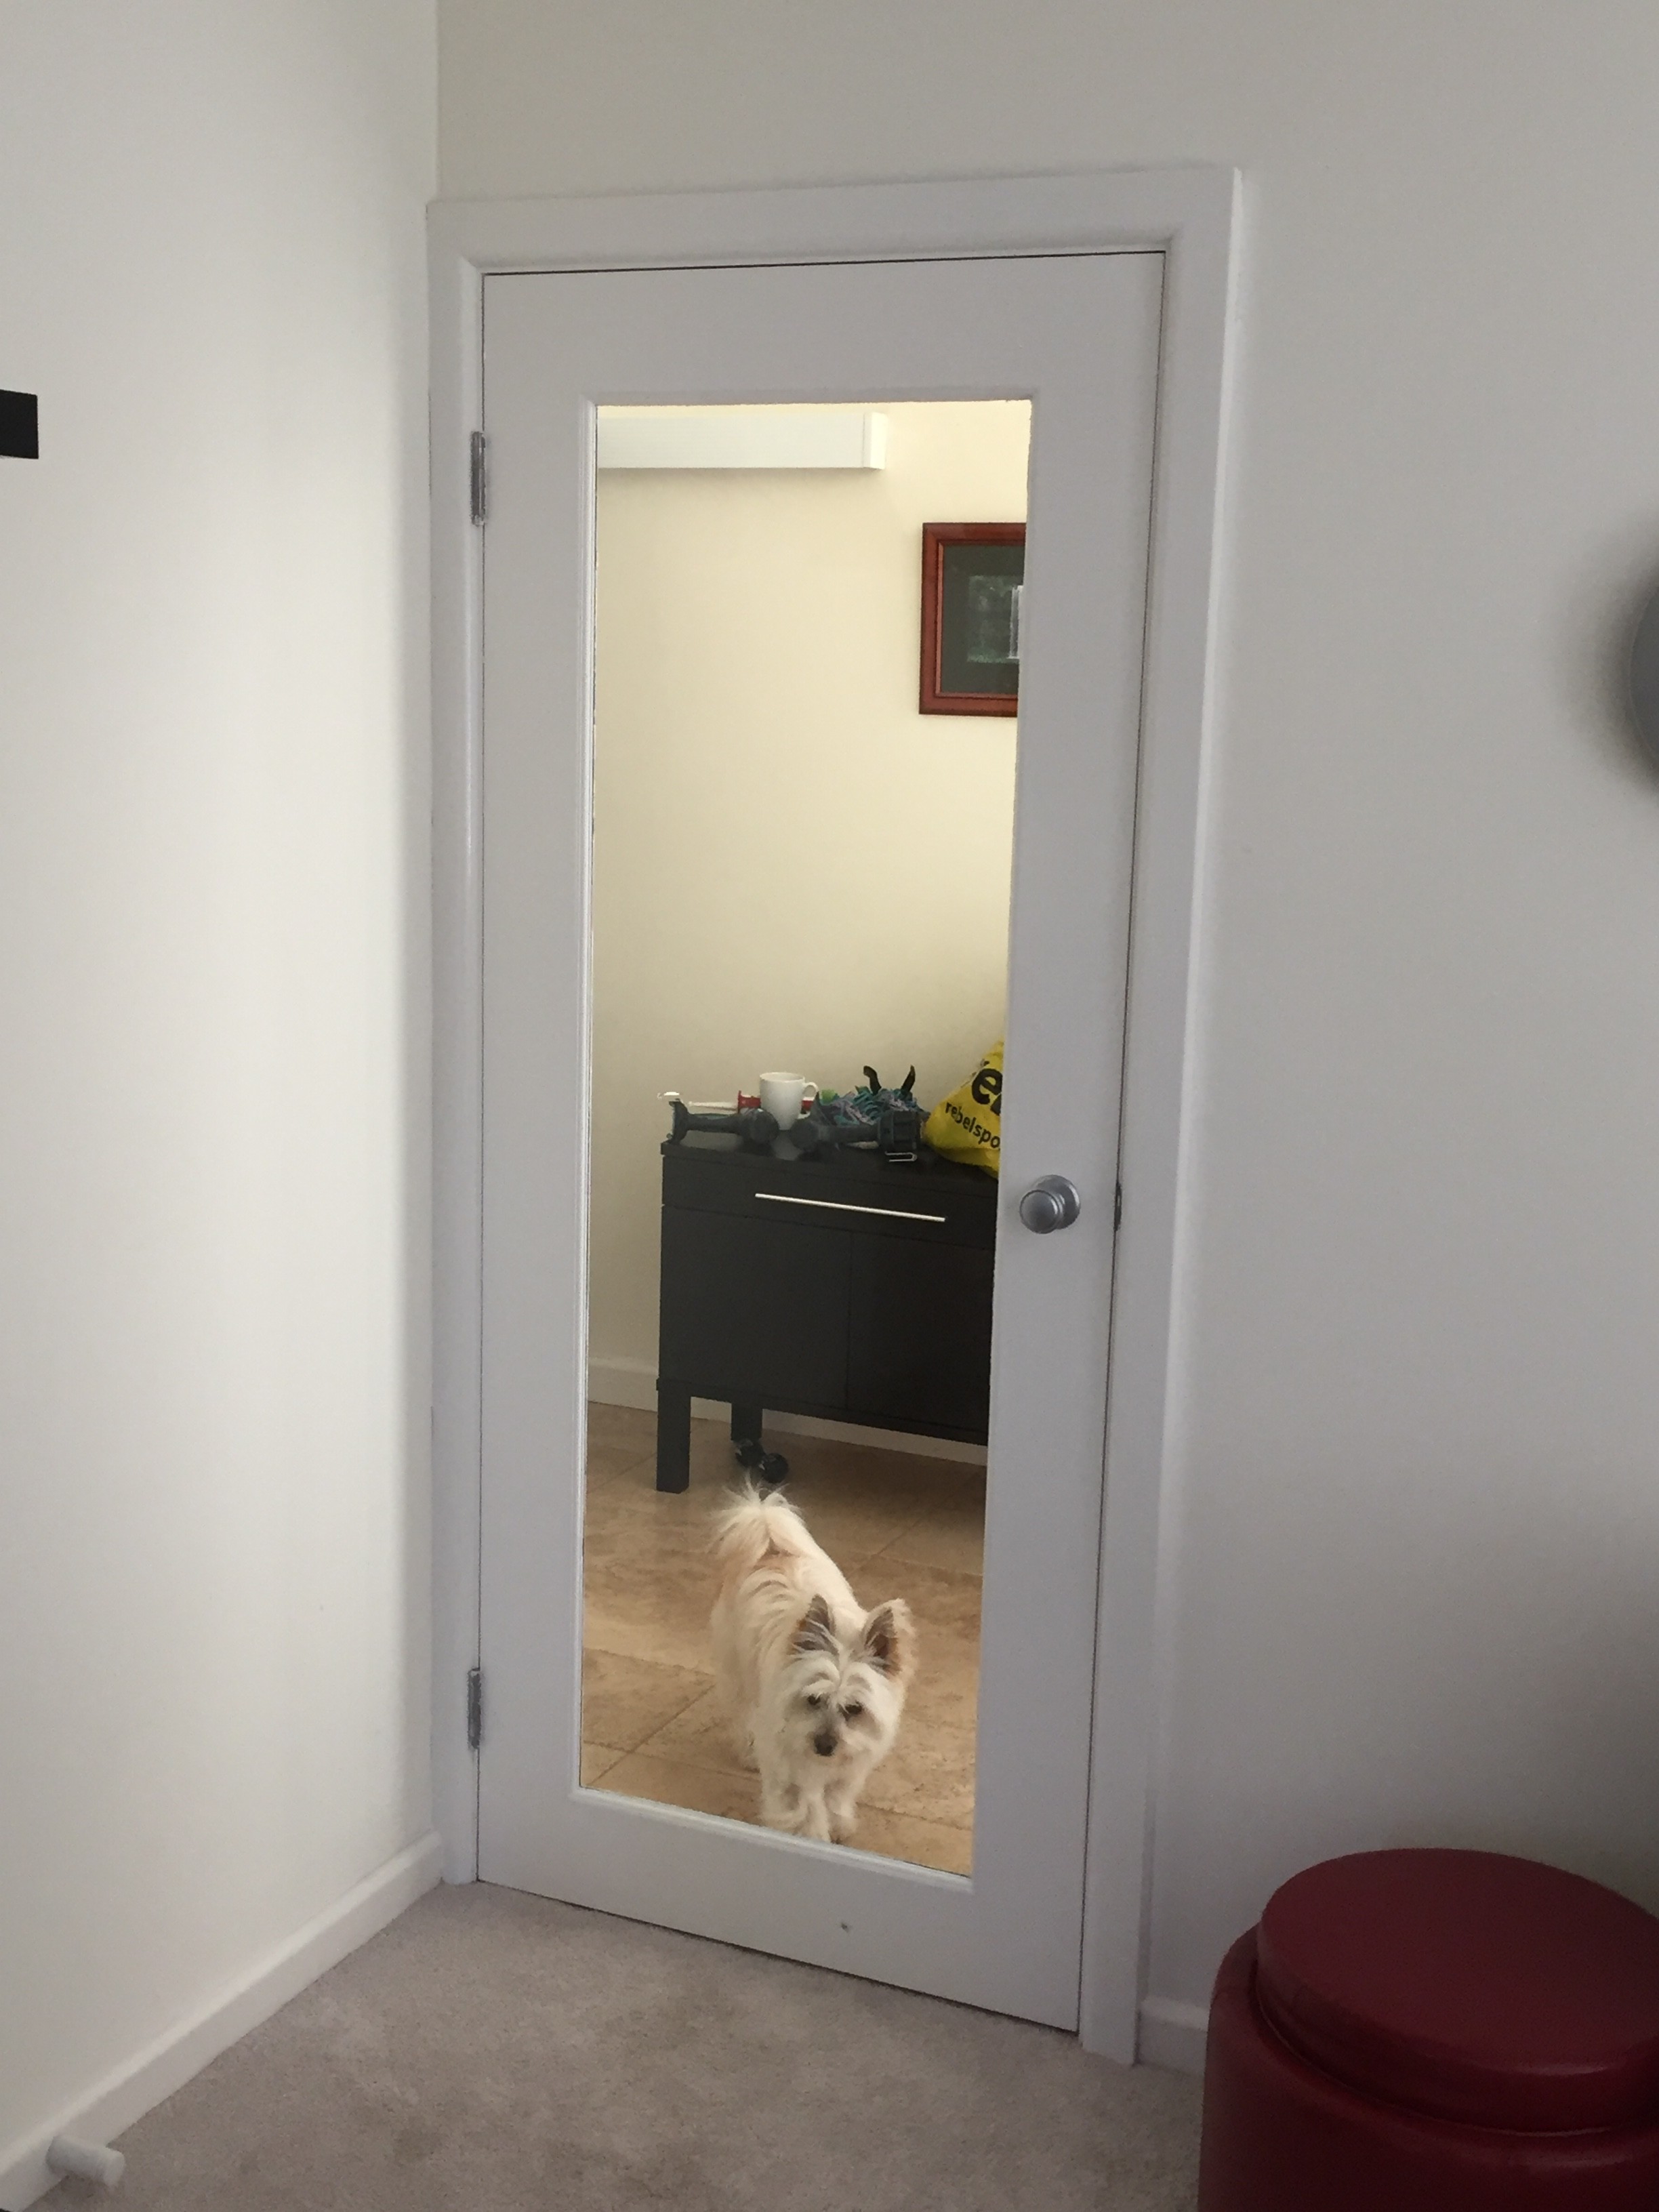 1i - Lounge Door Inspection